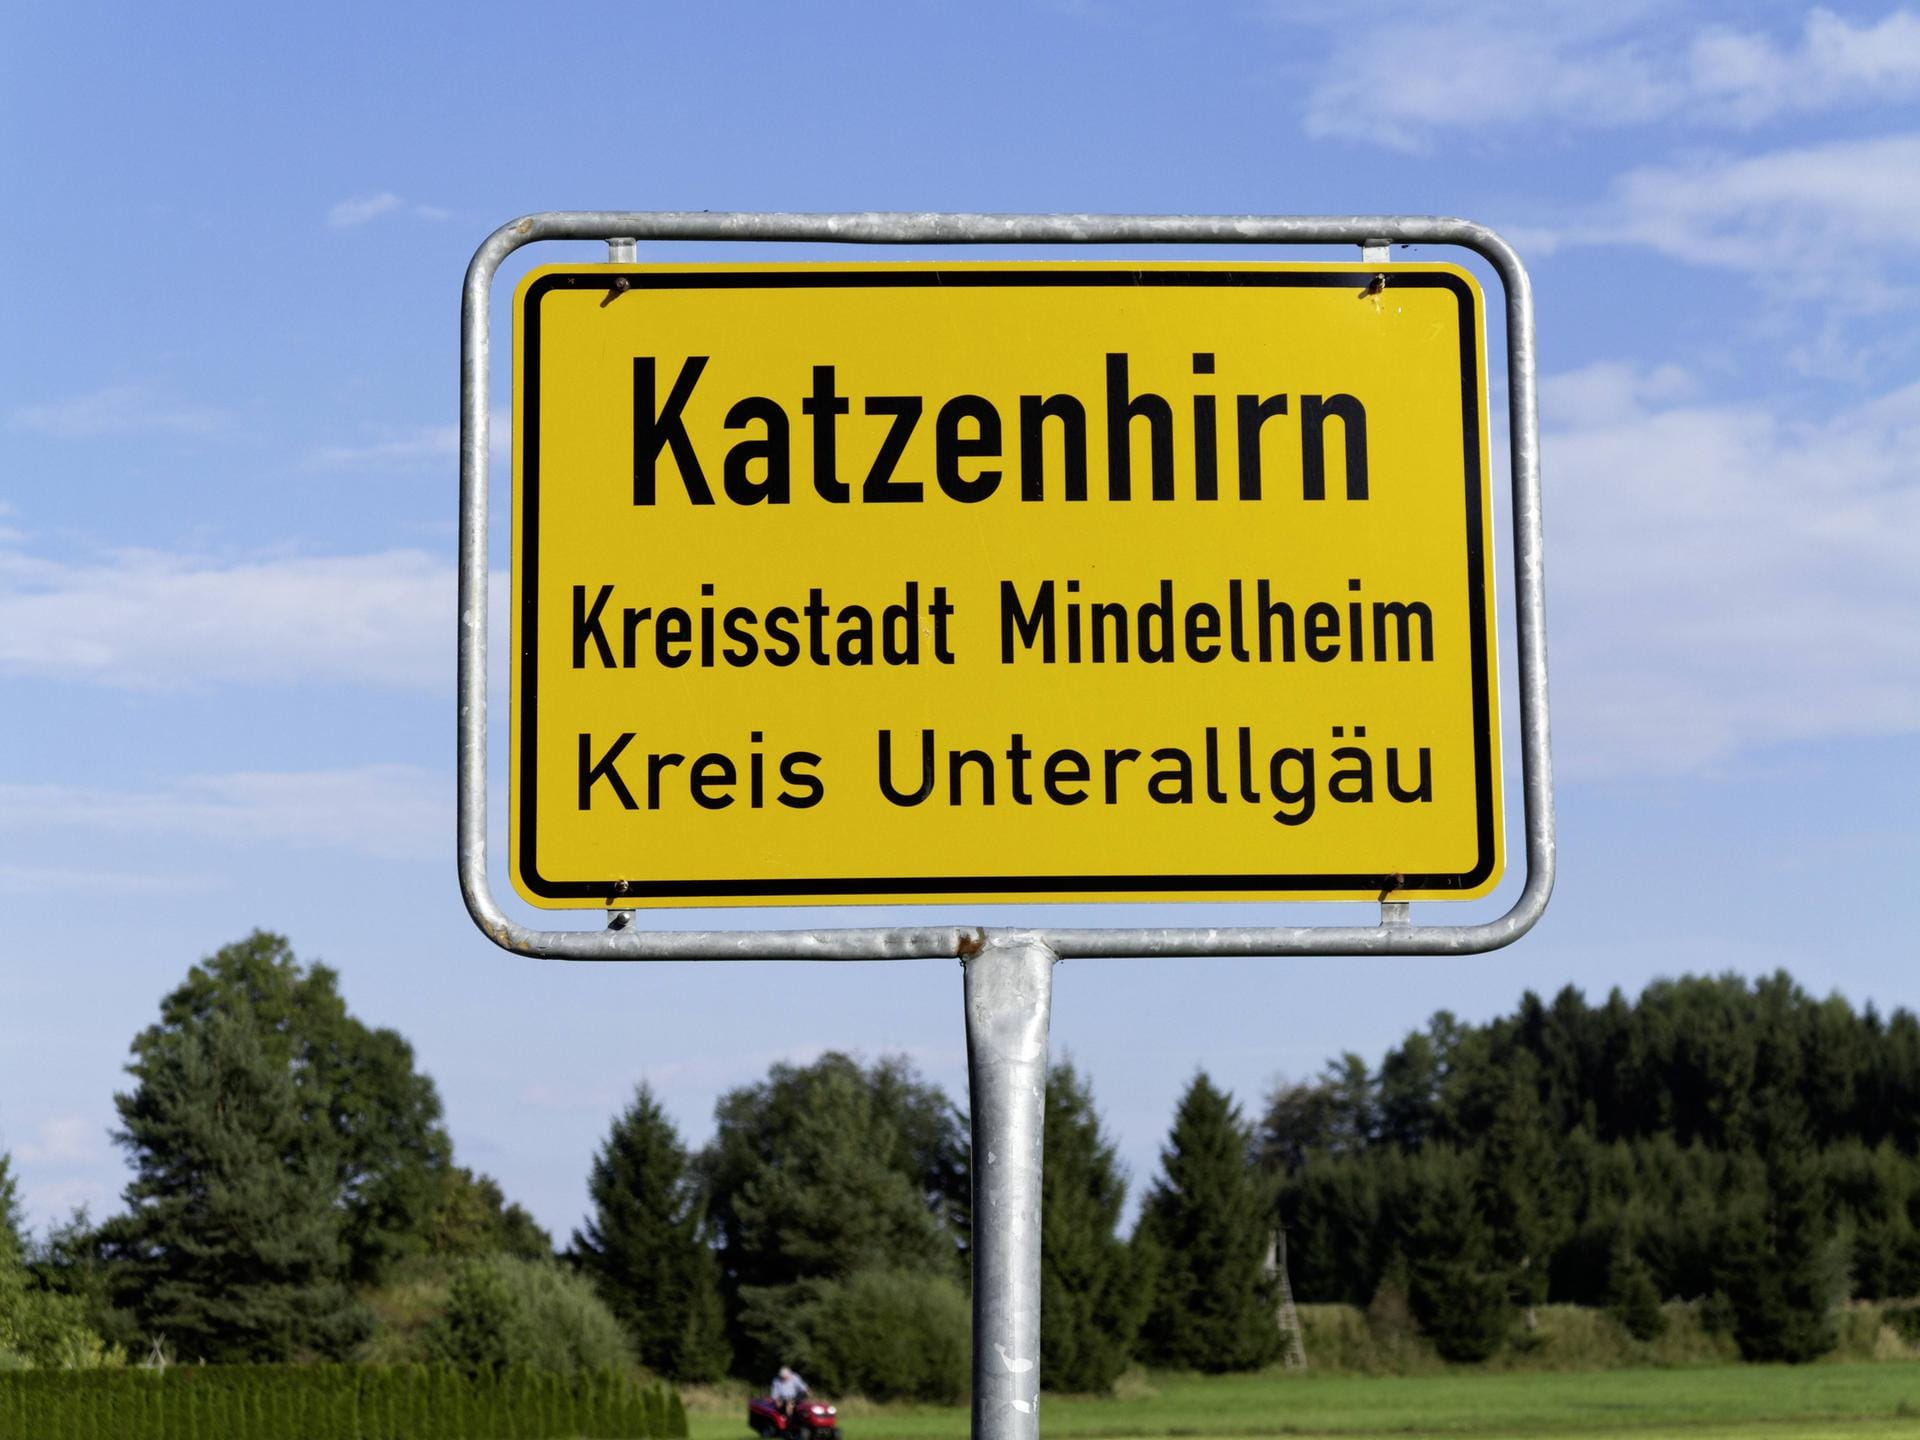 Katzenhirn ist ein Ortsteil der schwäbischen Stadt Mindelheim im Landkreis Unterallgäu.